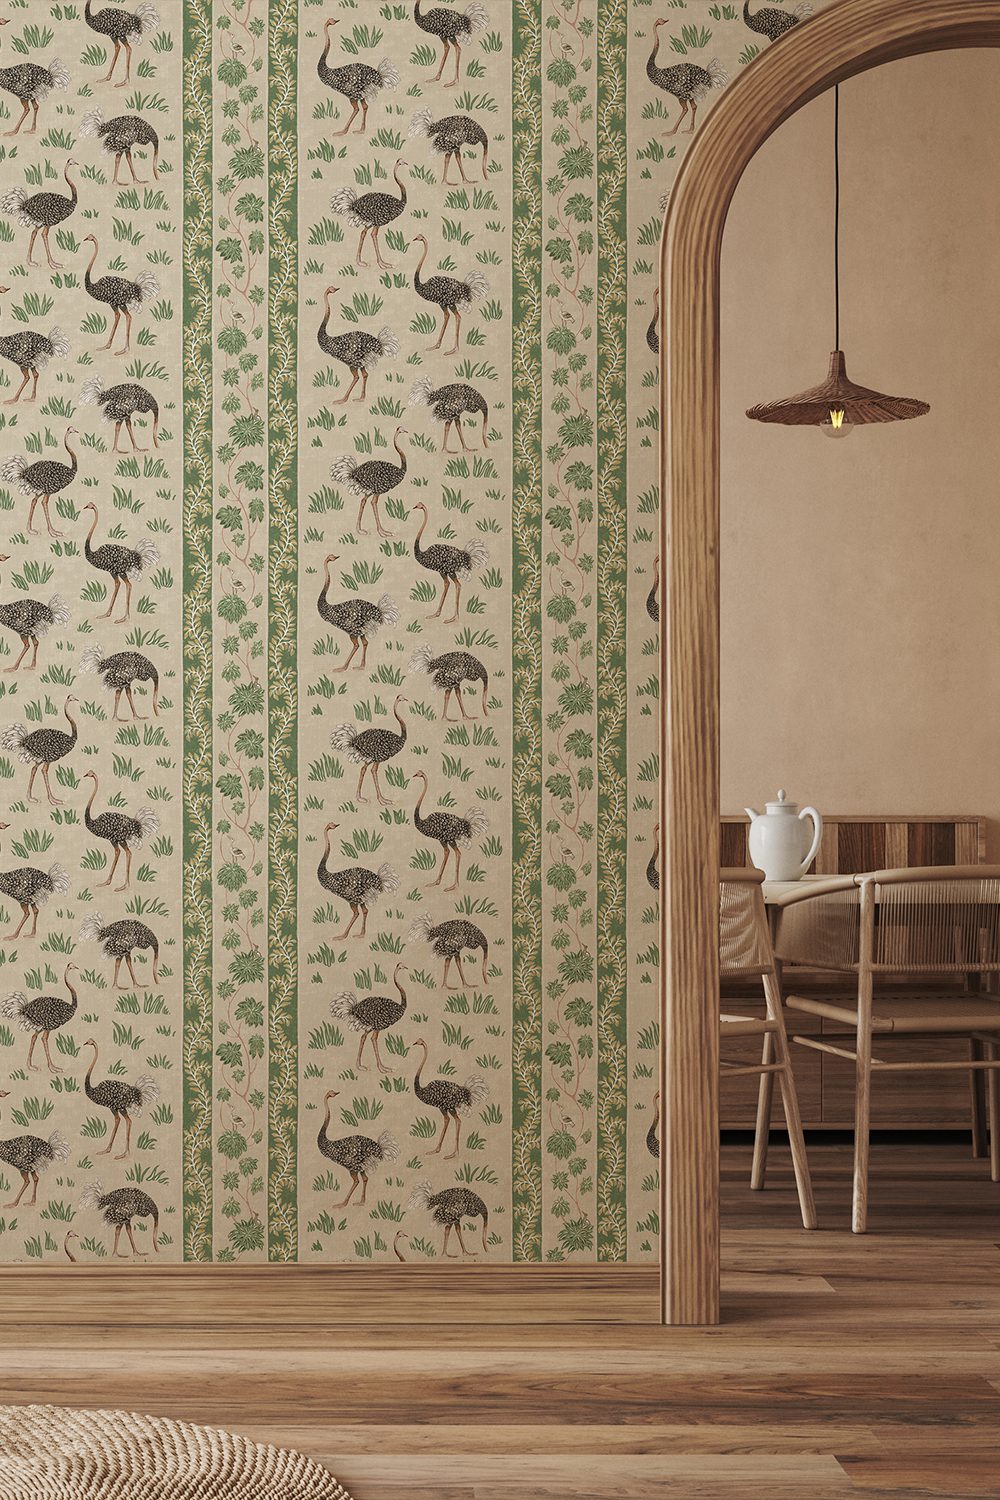 JMW-103211-josephine-Munsey-wallpaper-ostrich-stripe-hiding-birds-in-long-grass-khaki-and-green